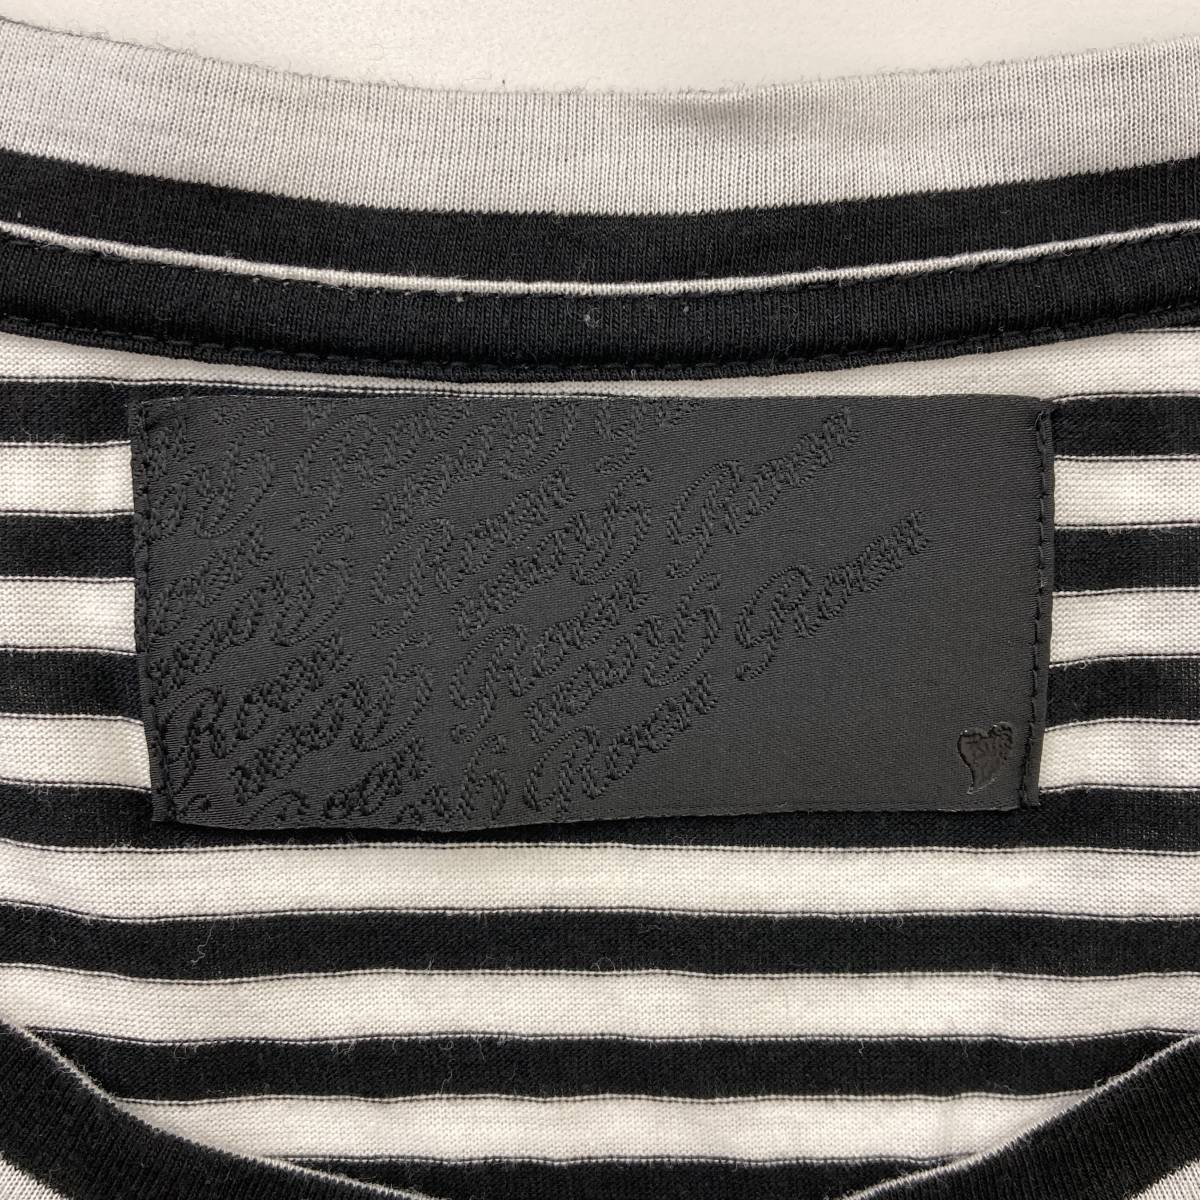 Roen スカル ロゴ ボーダー 半袖 Tシャツ 日本製 46サイズ (Mサイズ) ロエン 髑髏 ドクロ カットソー 3030528_画像4